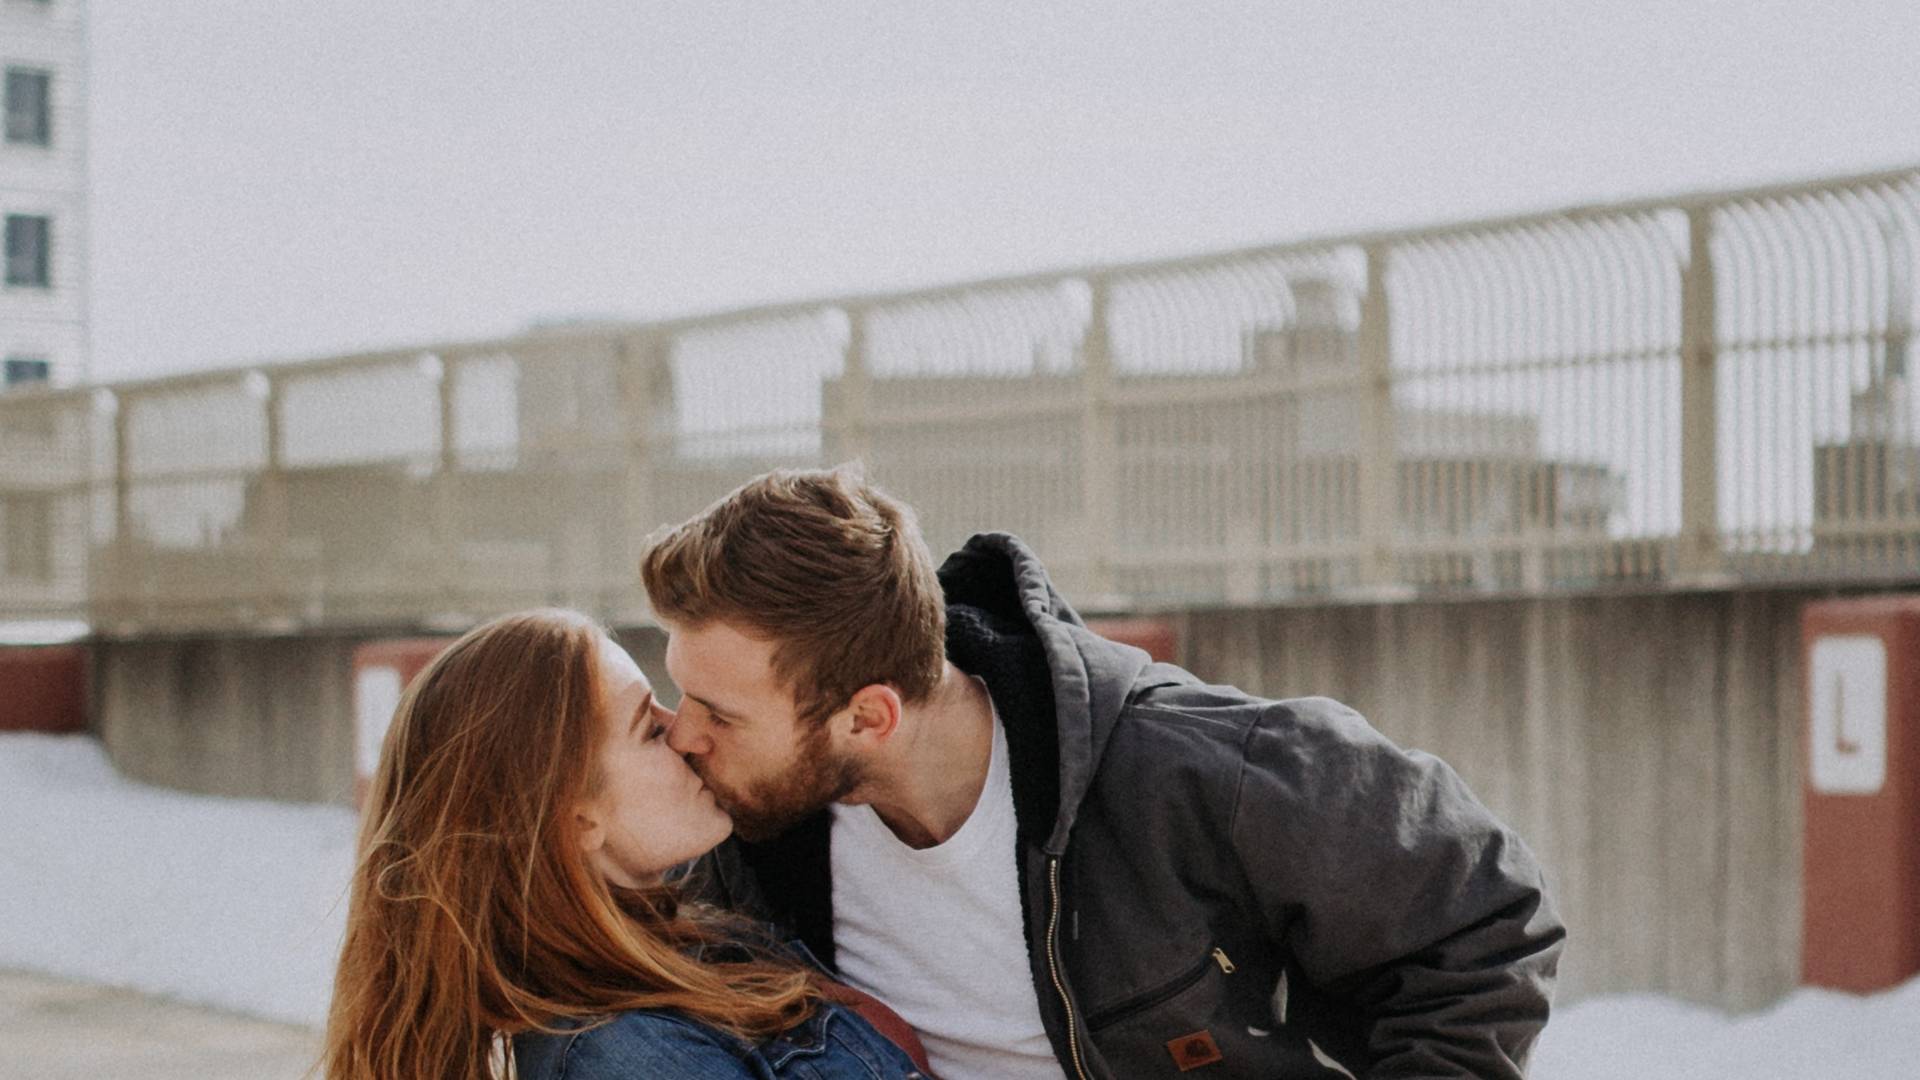 Całuj się kto może! 10 korzyści płynących z pocałunków